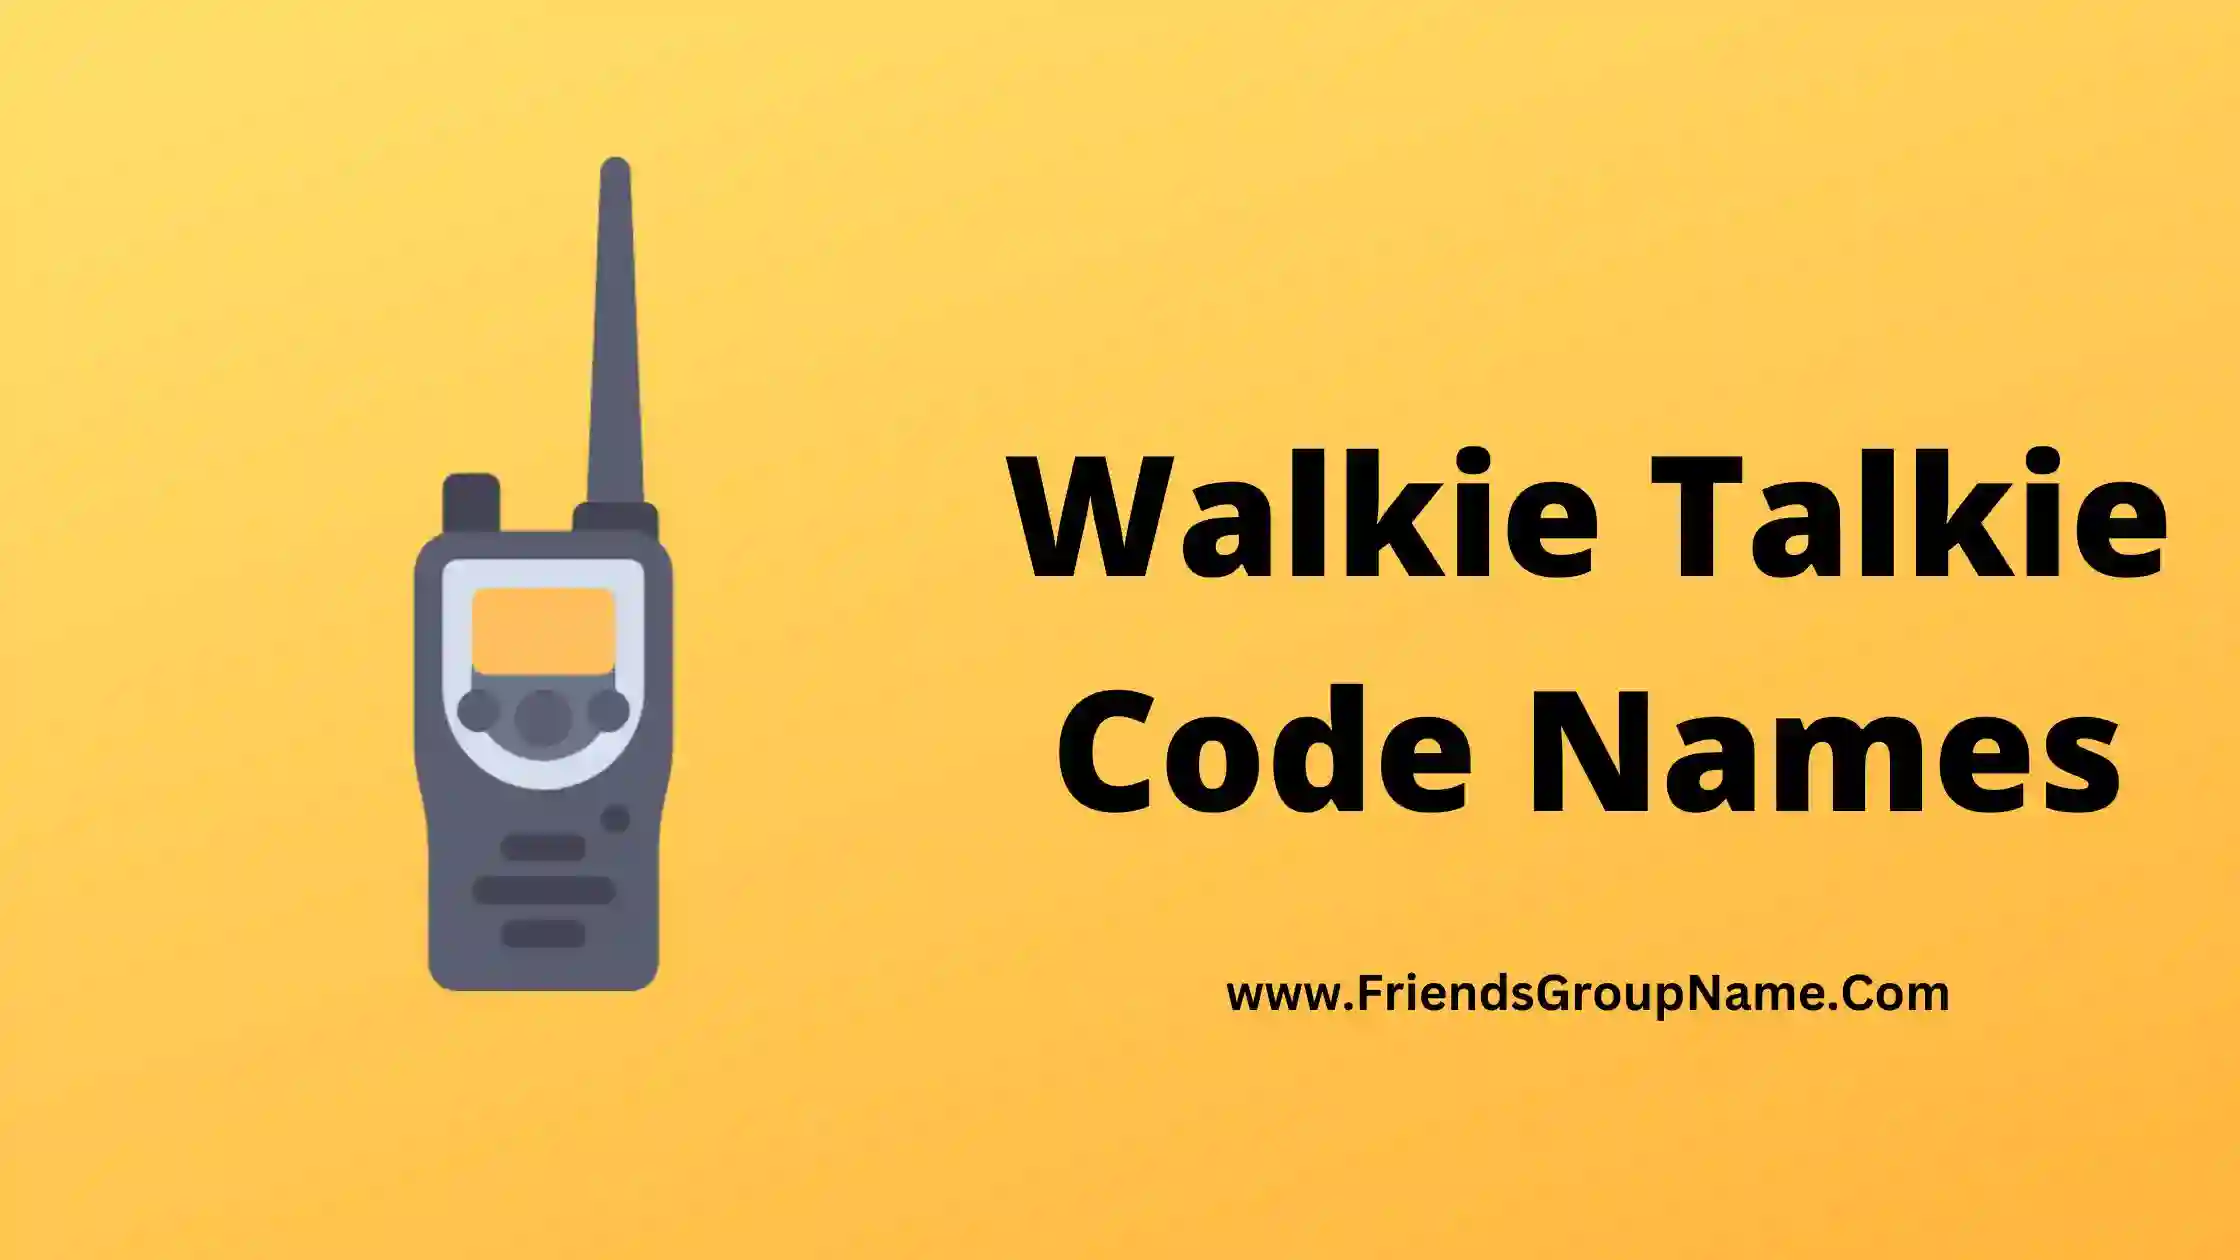 Walkie Talkie Code Names